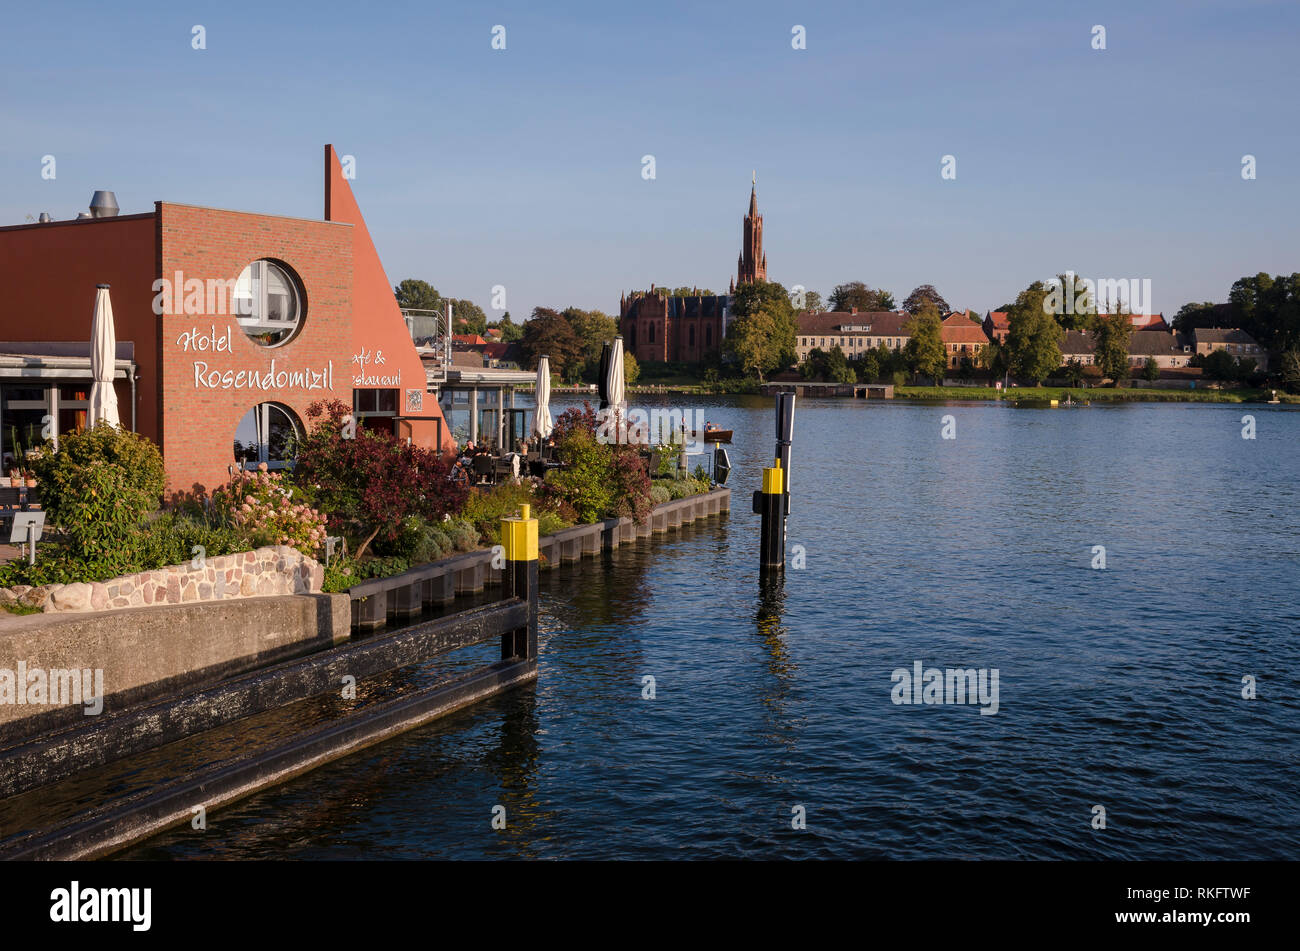 Malchow, Inselstadt im Malchower See, Mecklenburgische Seenplatte, Mecklenburg-Vorpommern, Deutschland Stock Photo